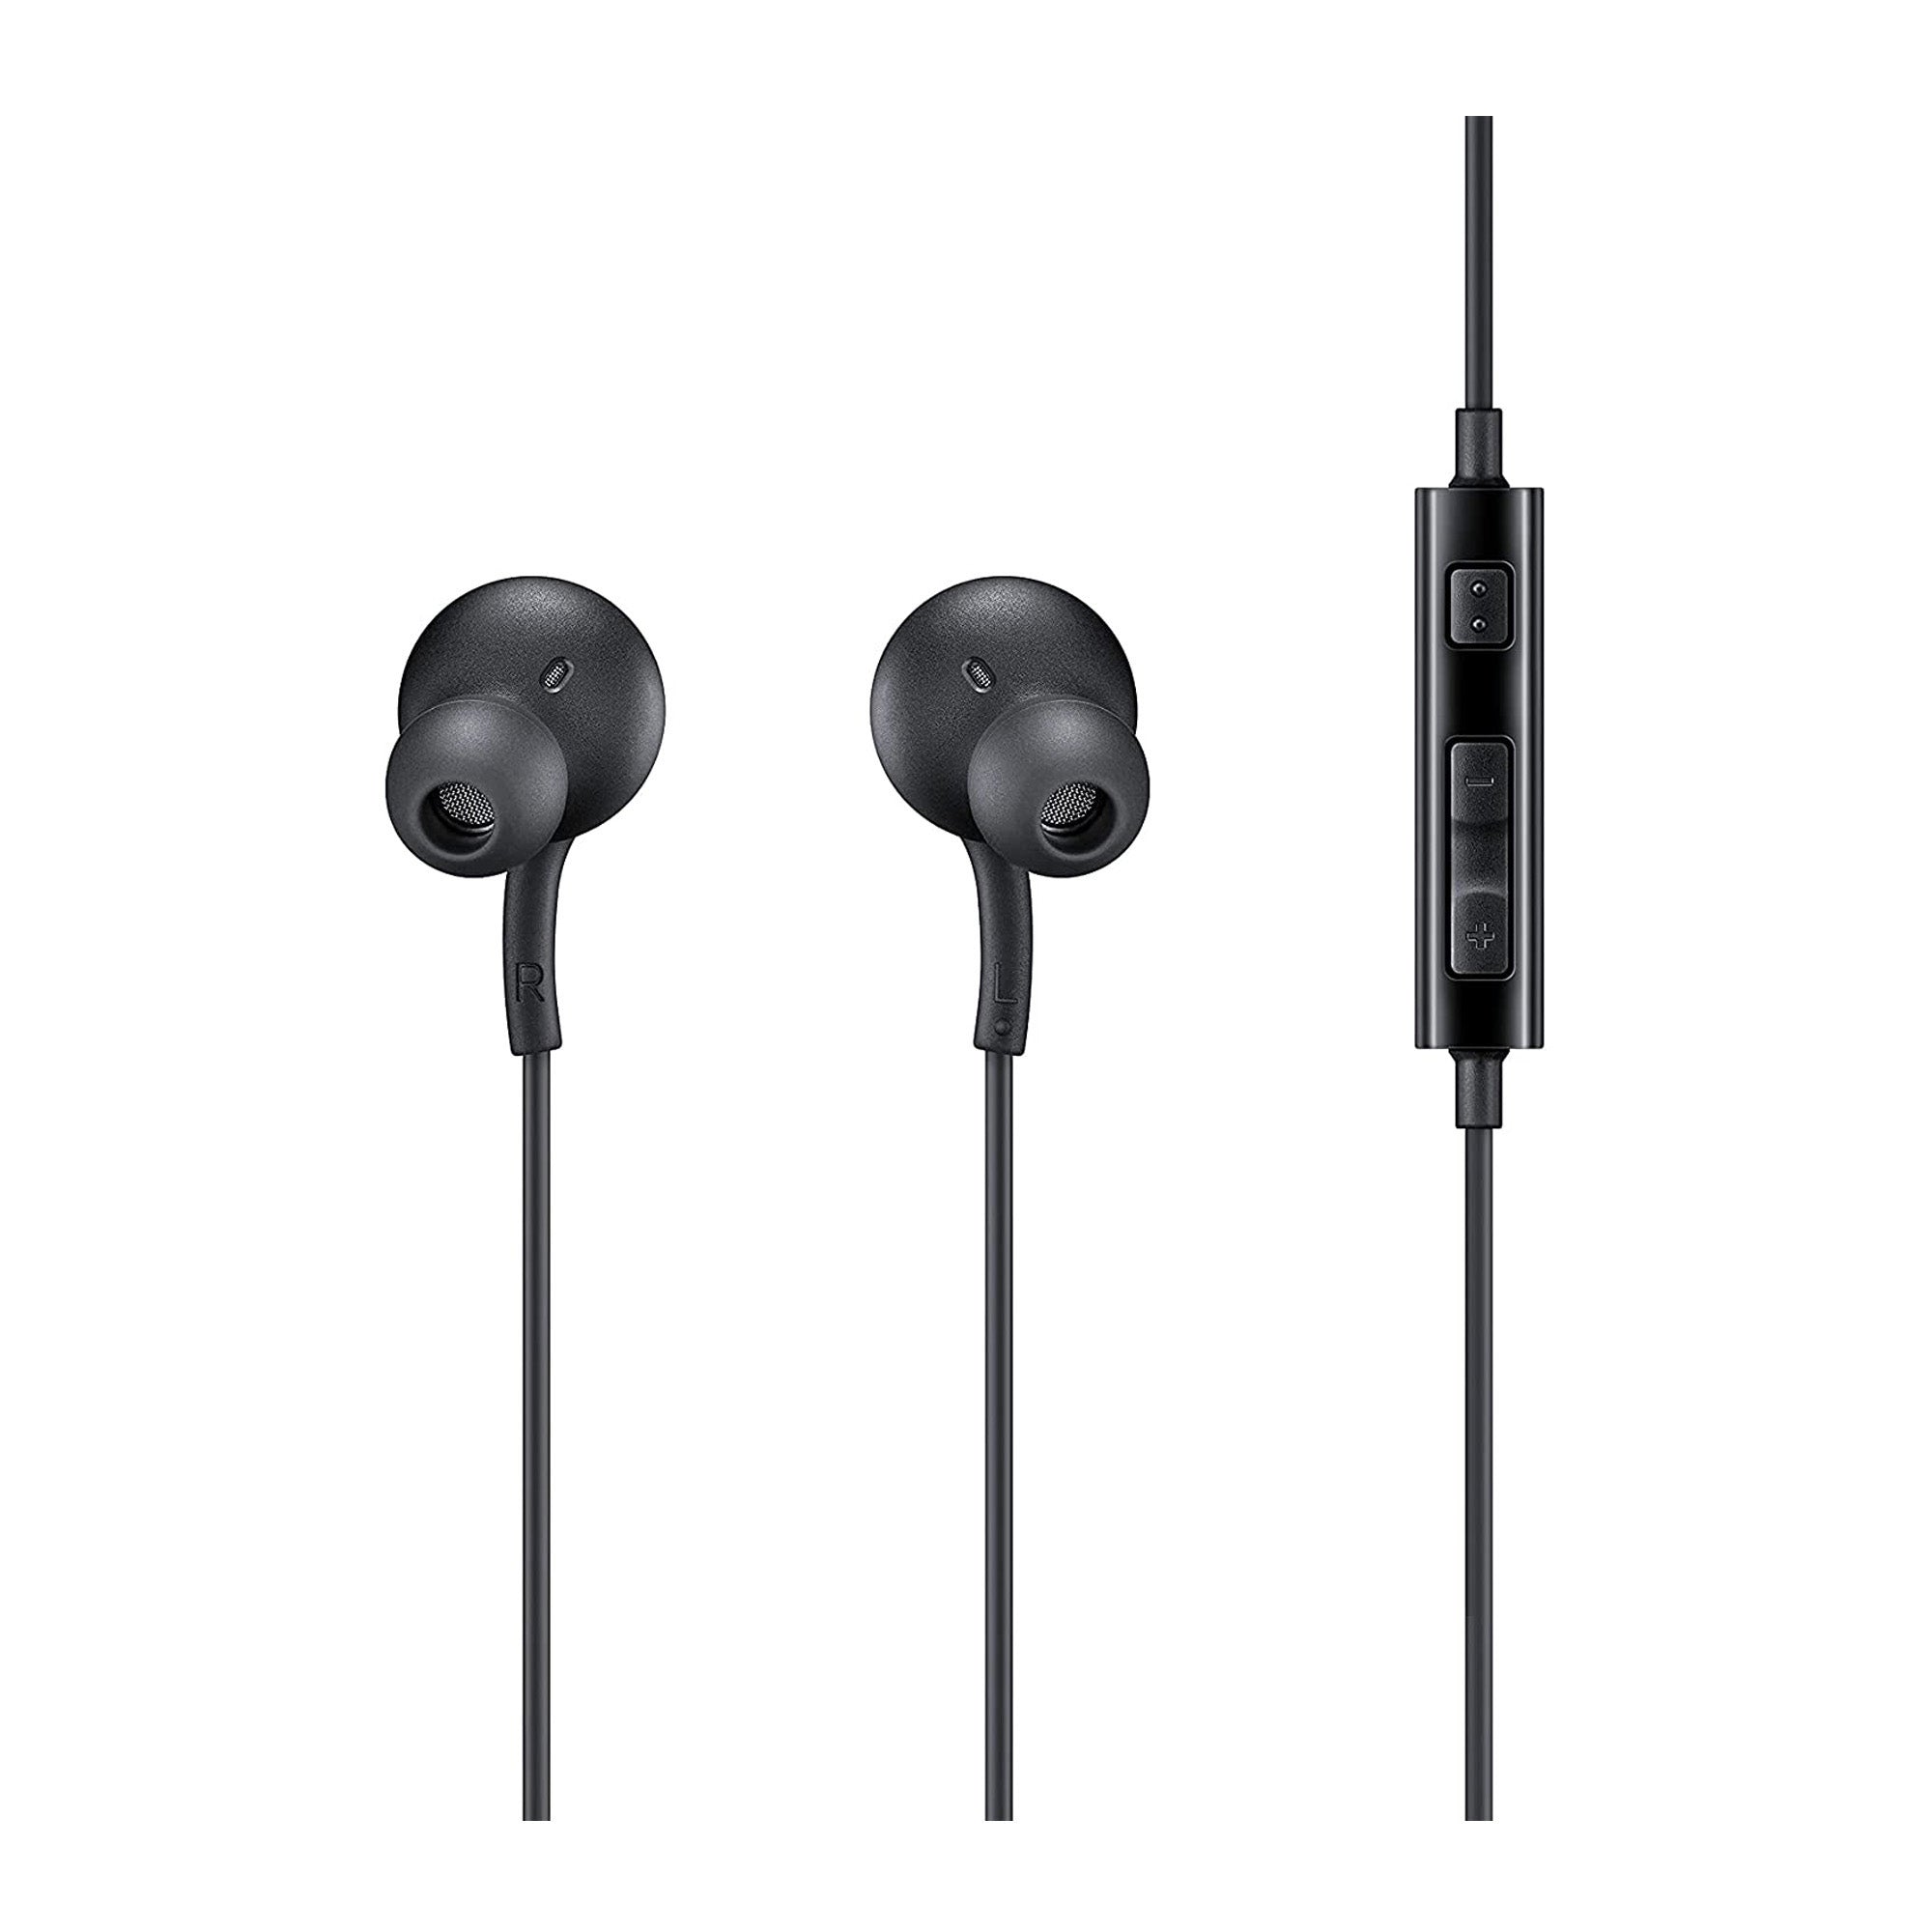 Samsung OEM 3.5mm Wired Headphones - 15-10036